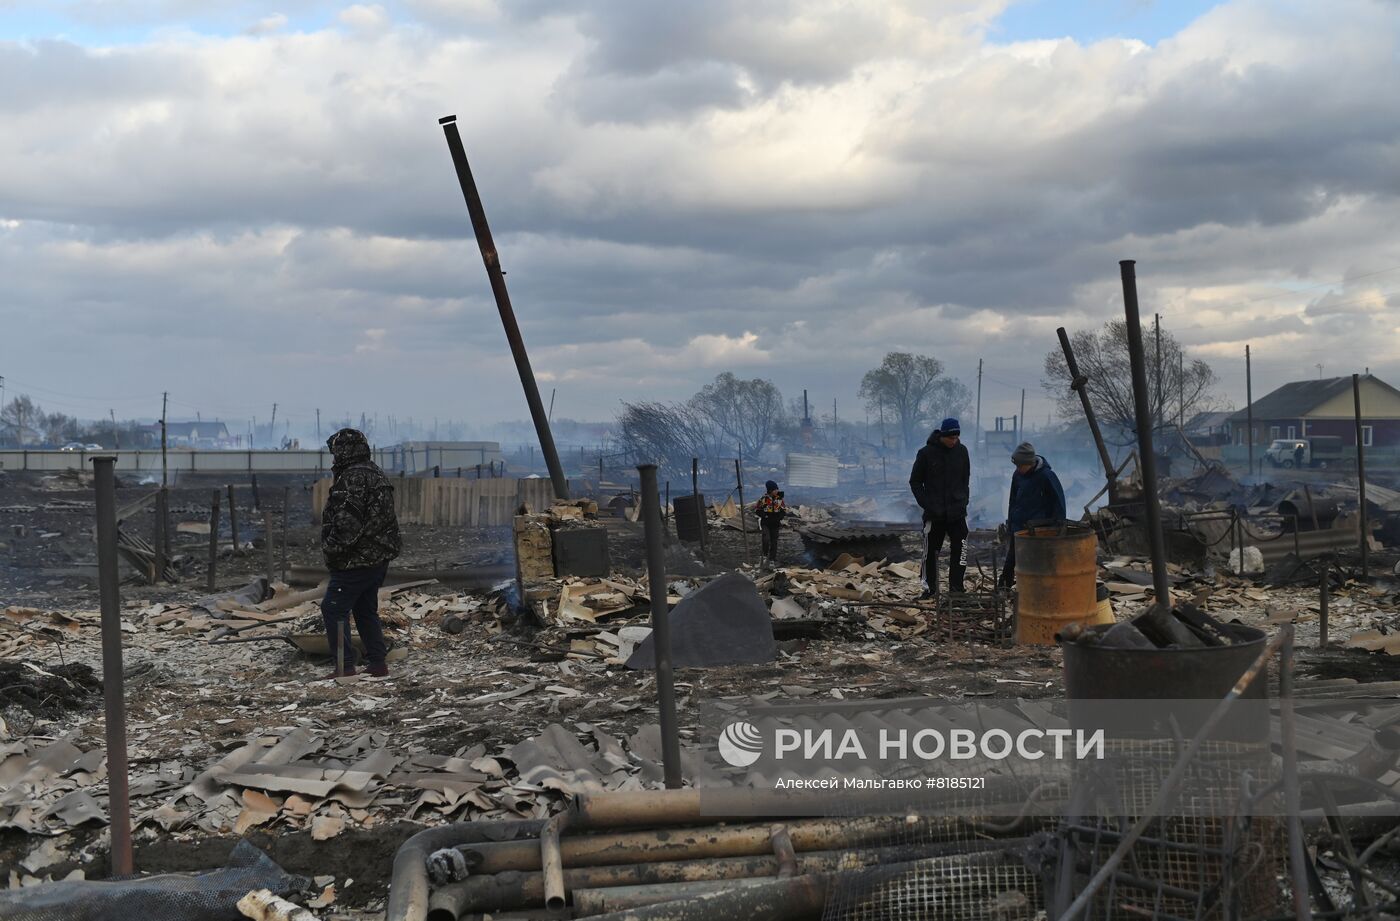 Режим ЧС введен в Омской области из-за пожаров